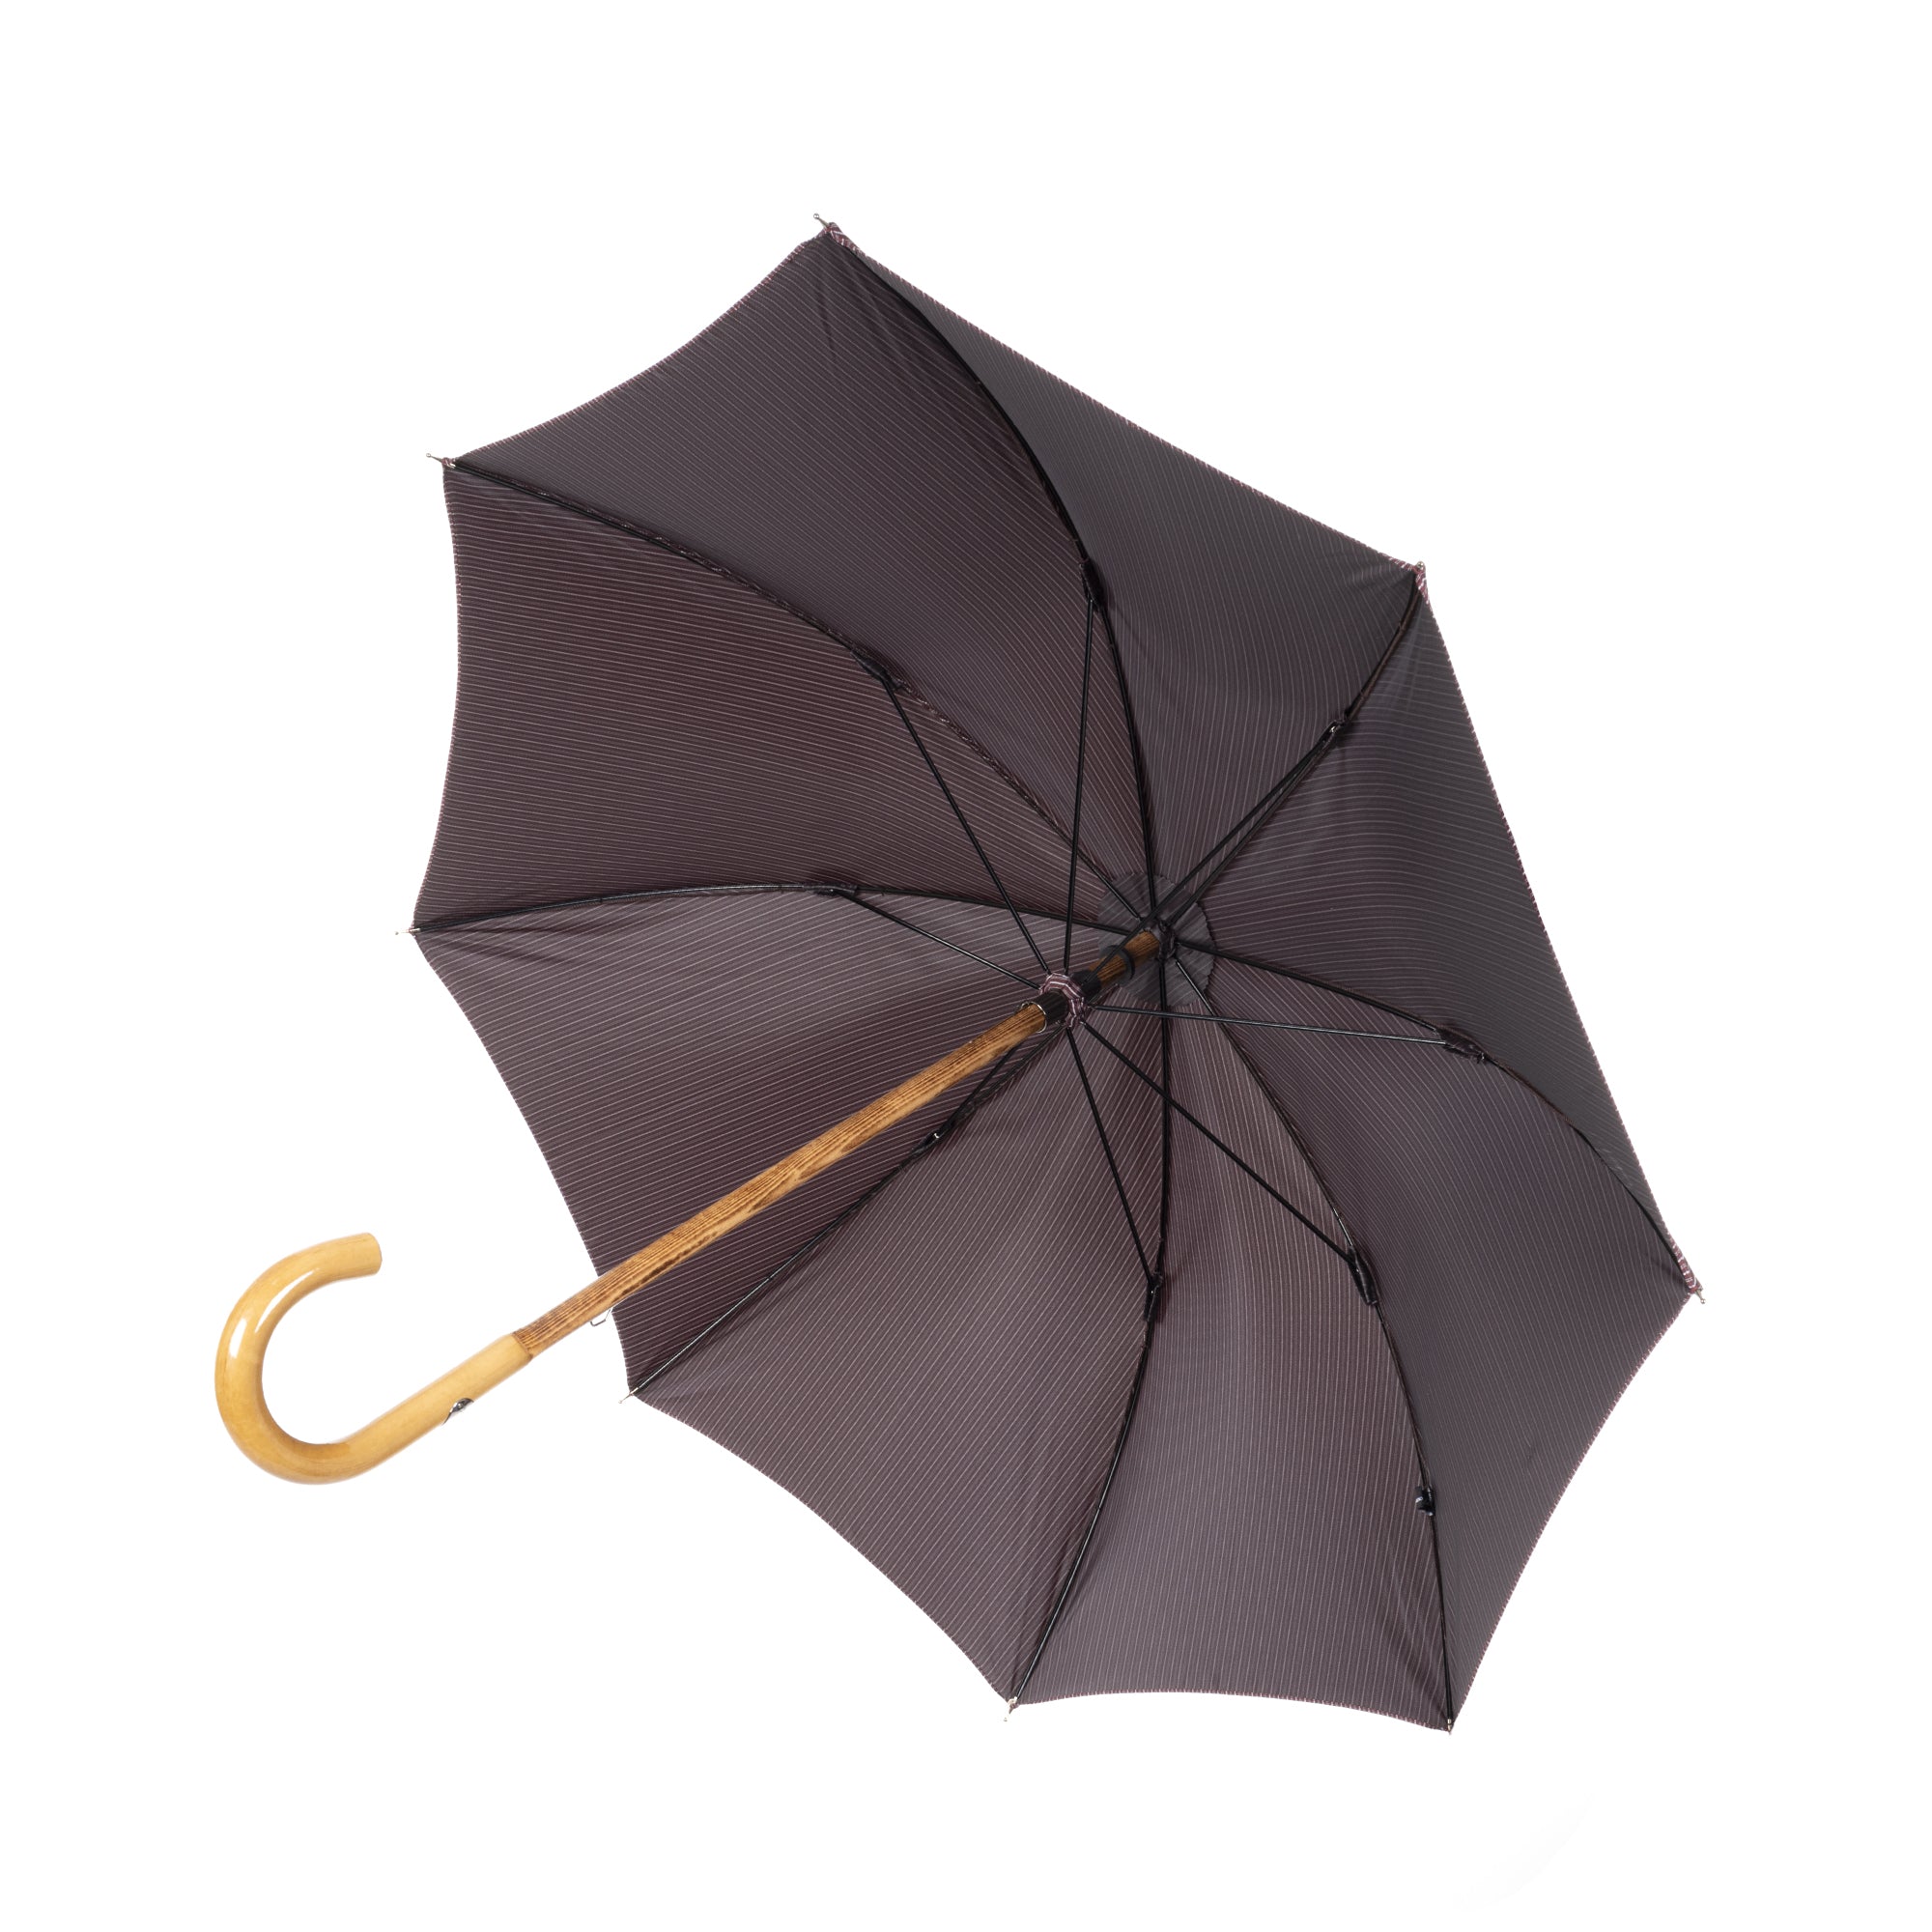 Shiny Indonesian Malacca Umbrella